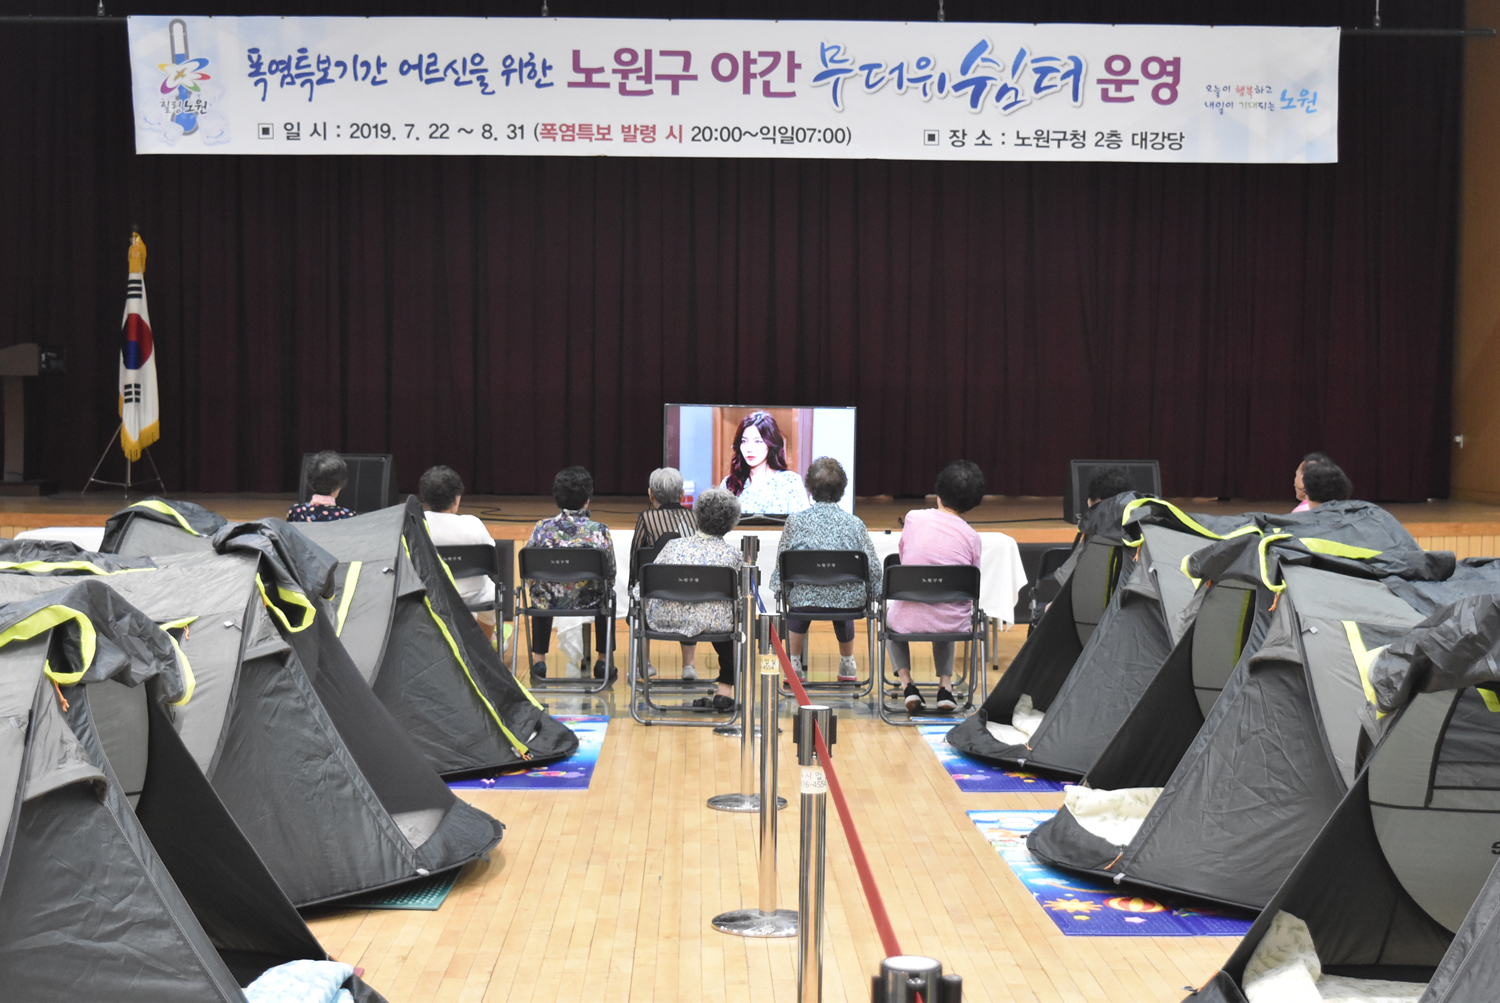 폭염특보가 발령된 지난 1일 폭염취약계층 노인들이 서울 노원구청에 마련된 야간무더위쉼터에서 휴식을 취하고 있다. 노원구 제공 2019.8.2. 